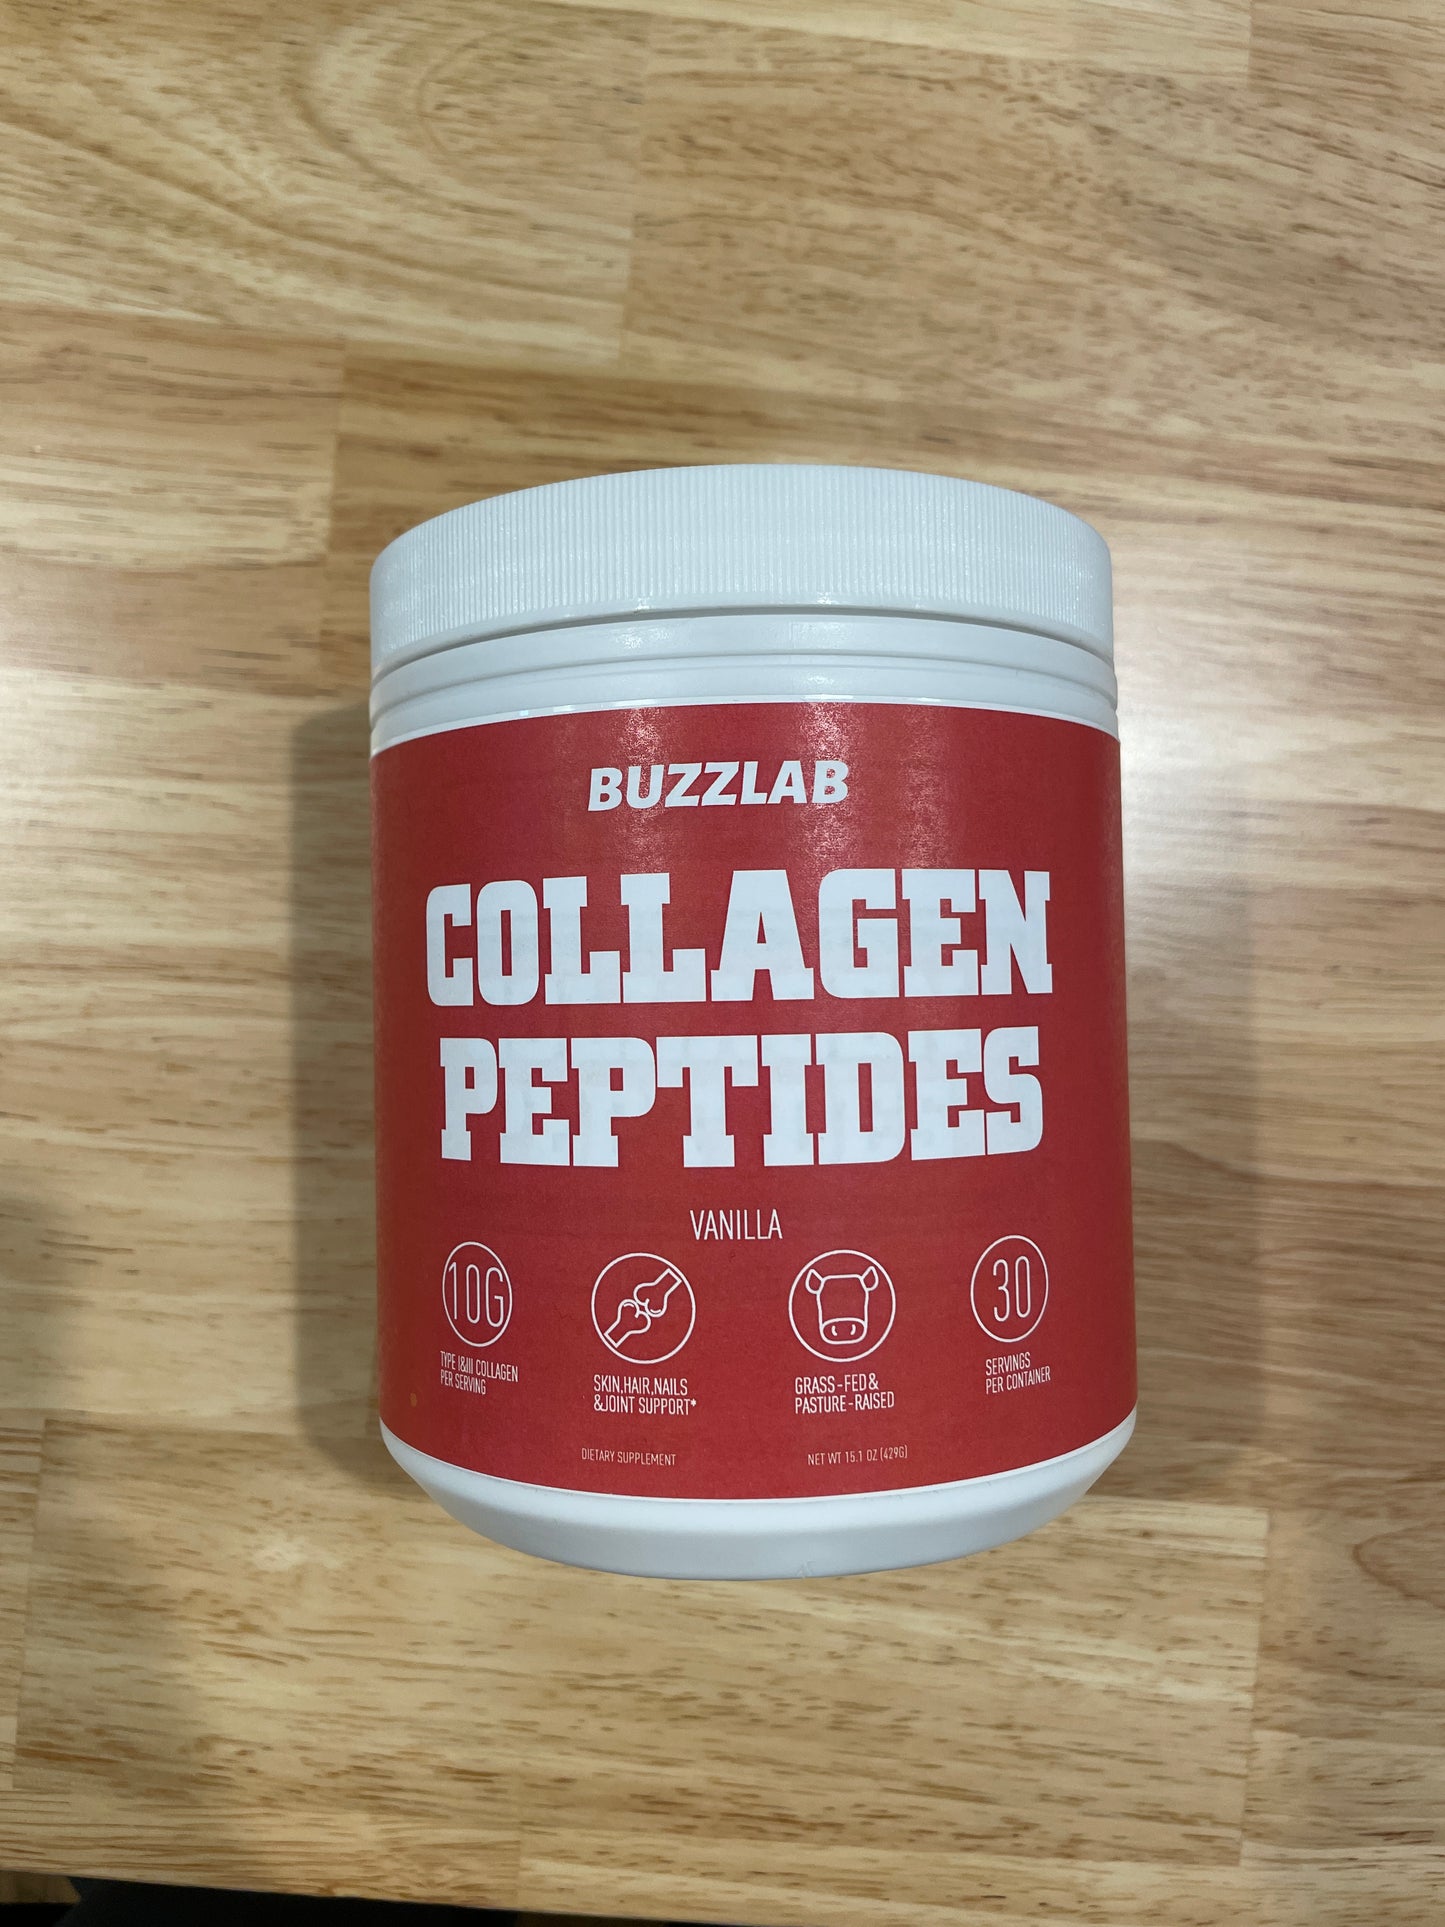 BUZZLAB Collagen Powder Supplement - Vanilla